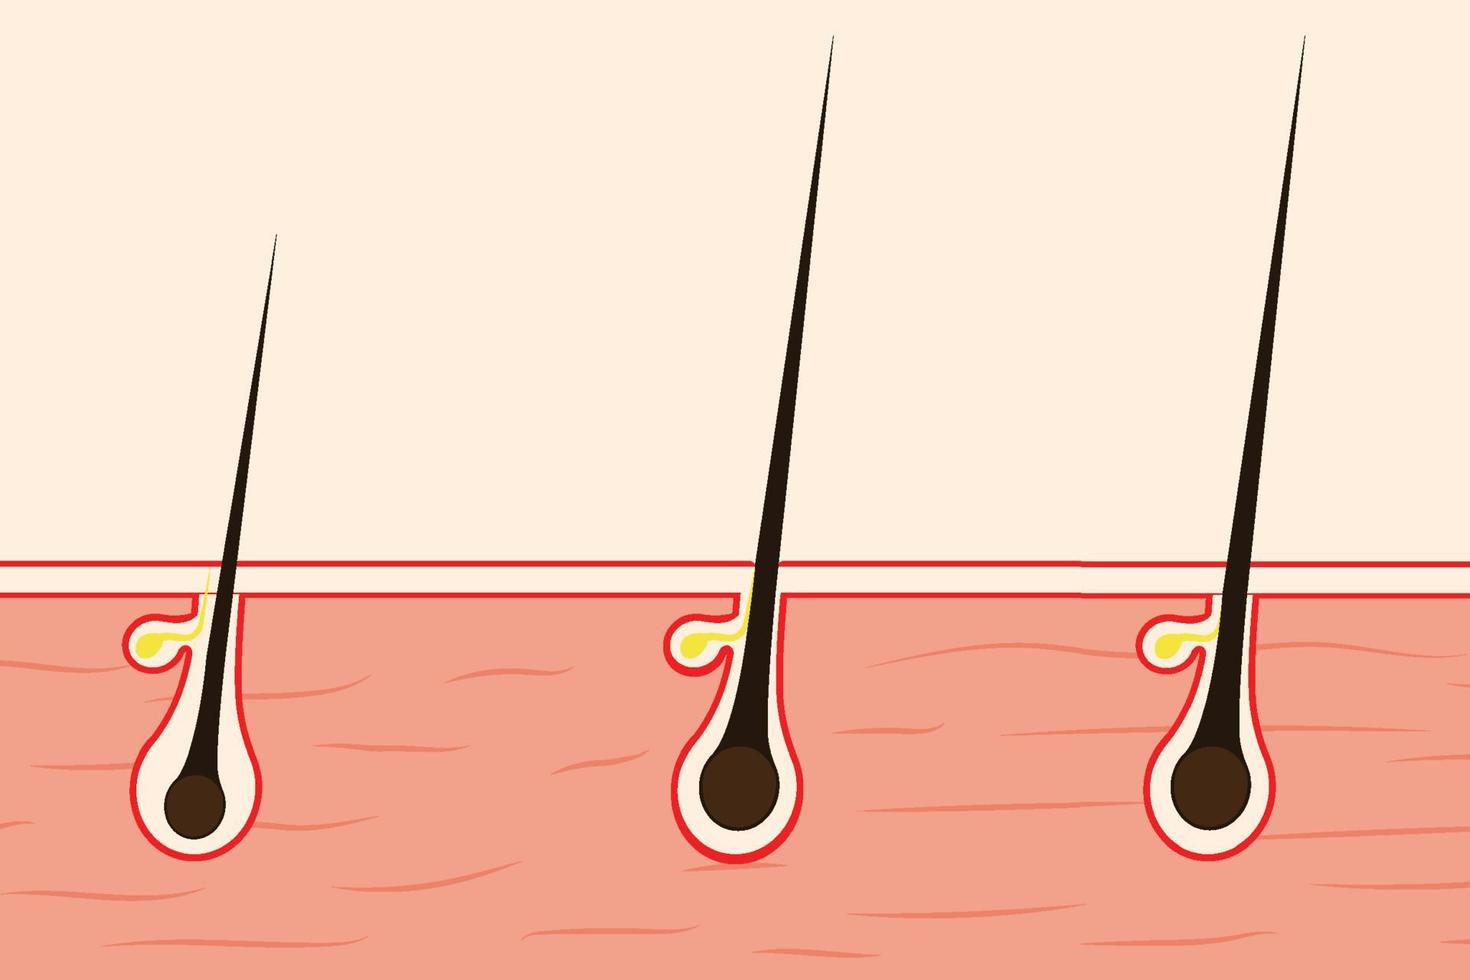 concept de croissance des cheveux avec une illustration de peau humaine. follicules pileux avec des sacs d'huile et des fils noirs sur la peau. phase de croissance anatomique des cheveux et étapes du vecteur du cycle de croissance des cheveux.